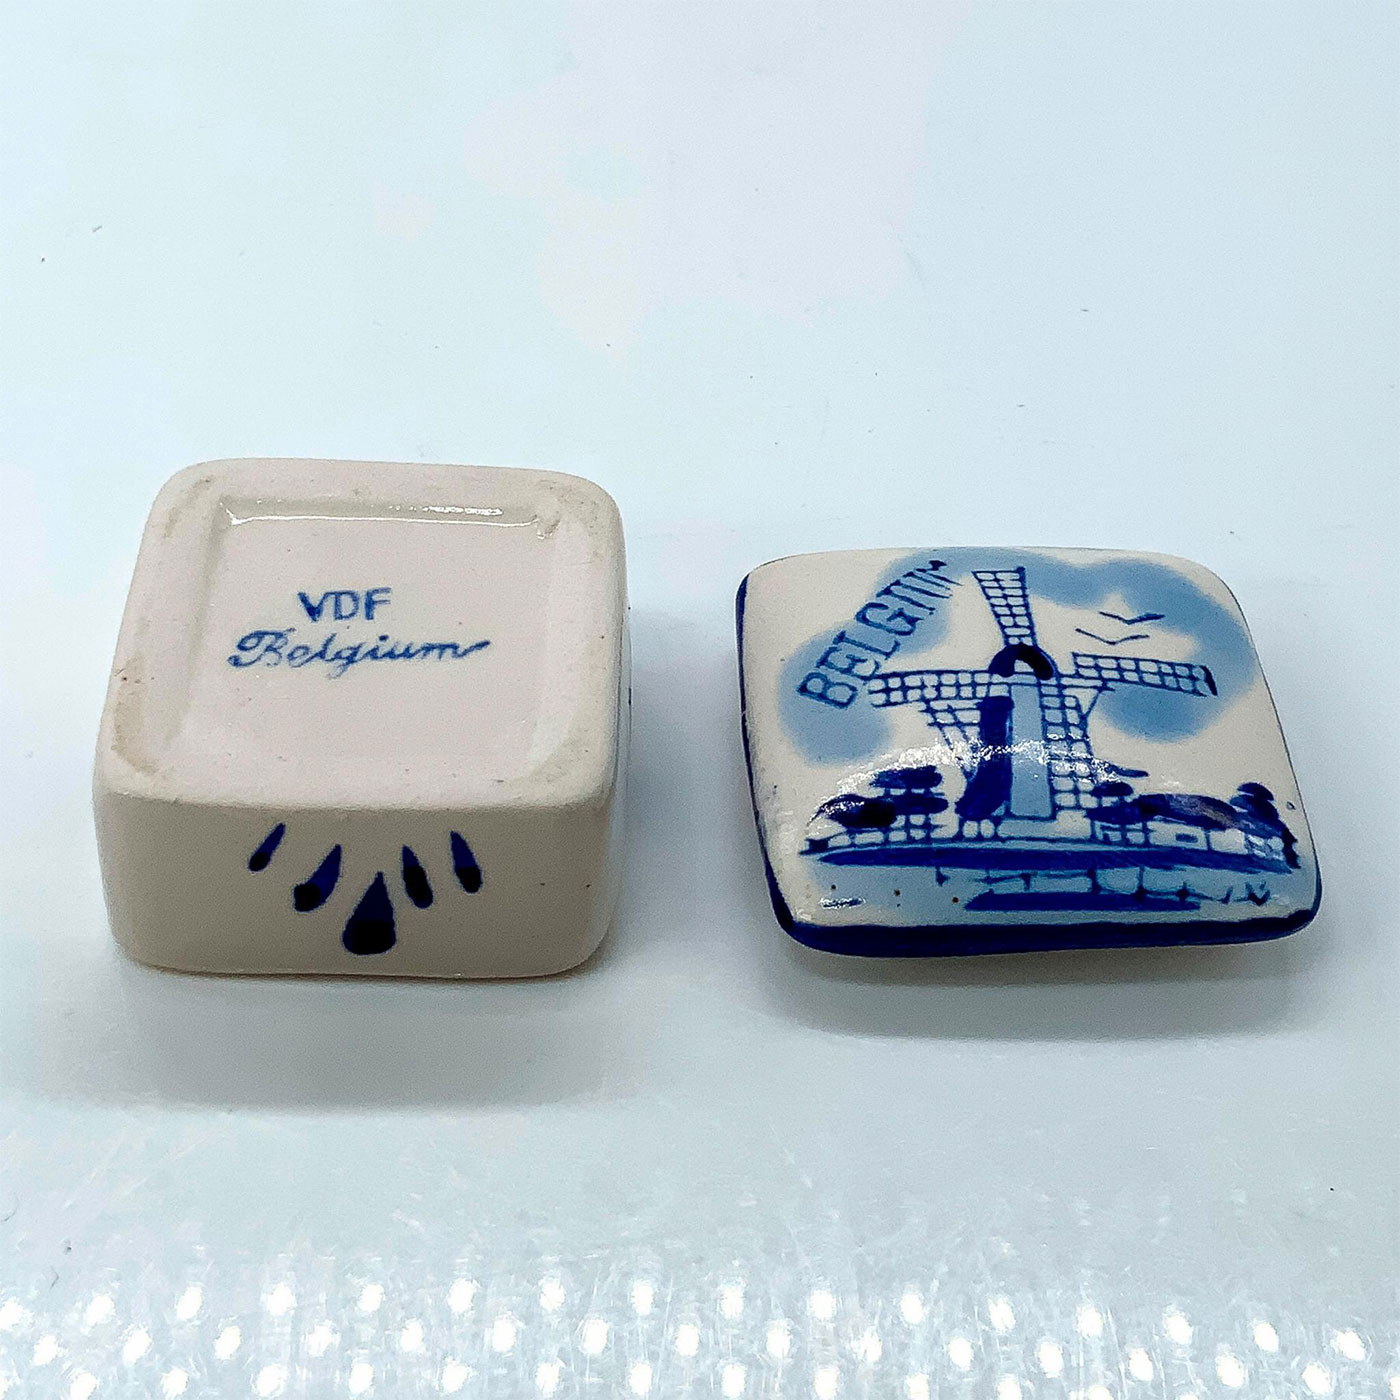 Belgium Ceramic Trinket Box - Image 3 of 3